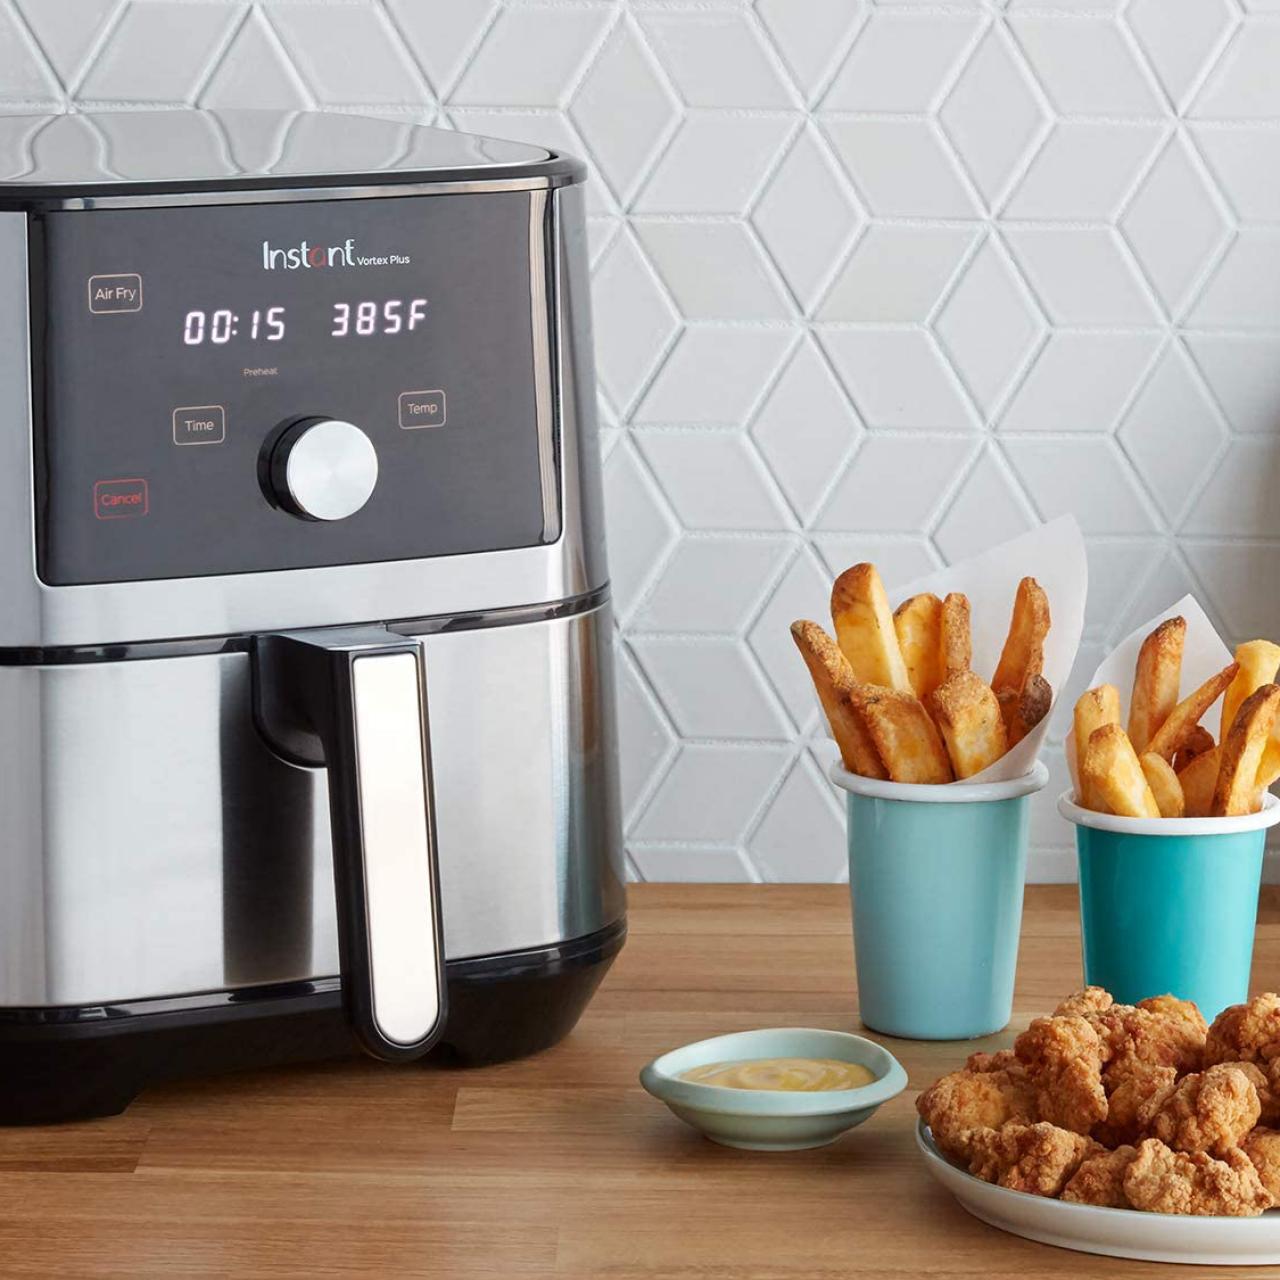 Chef's Instant Vortex Plus Air Fryer Oven Review [8 PHOTOS